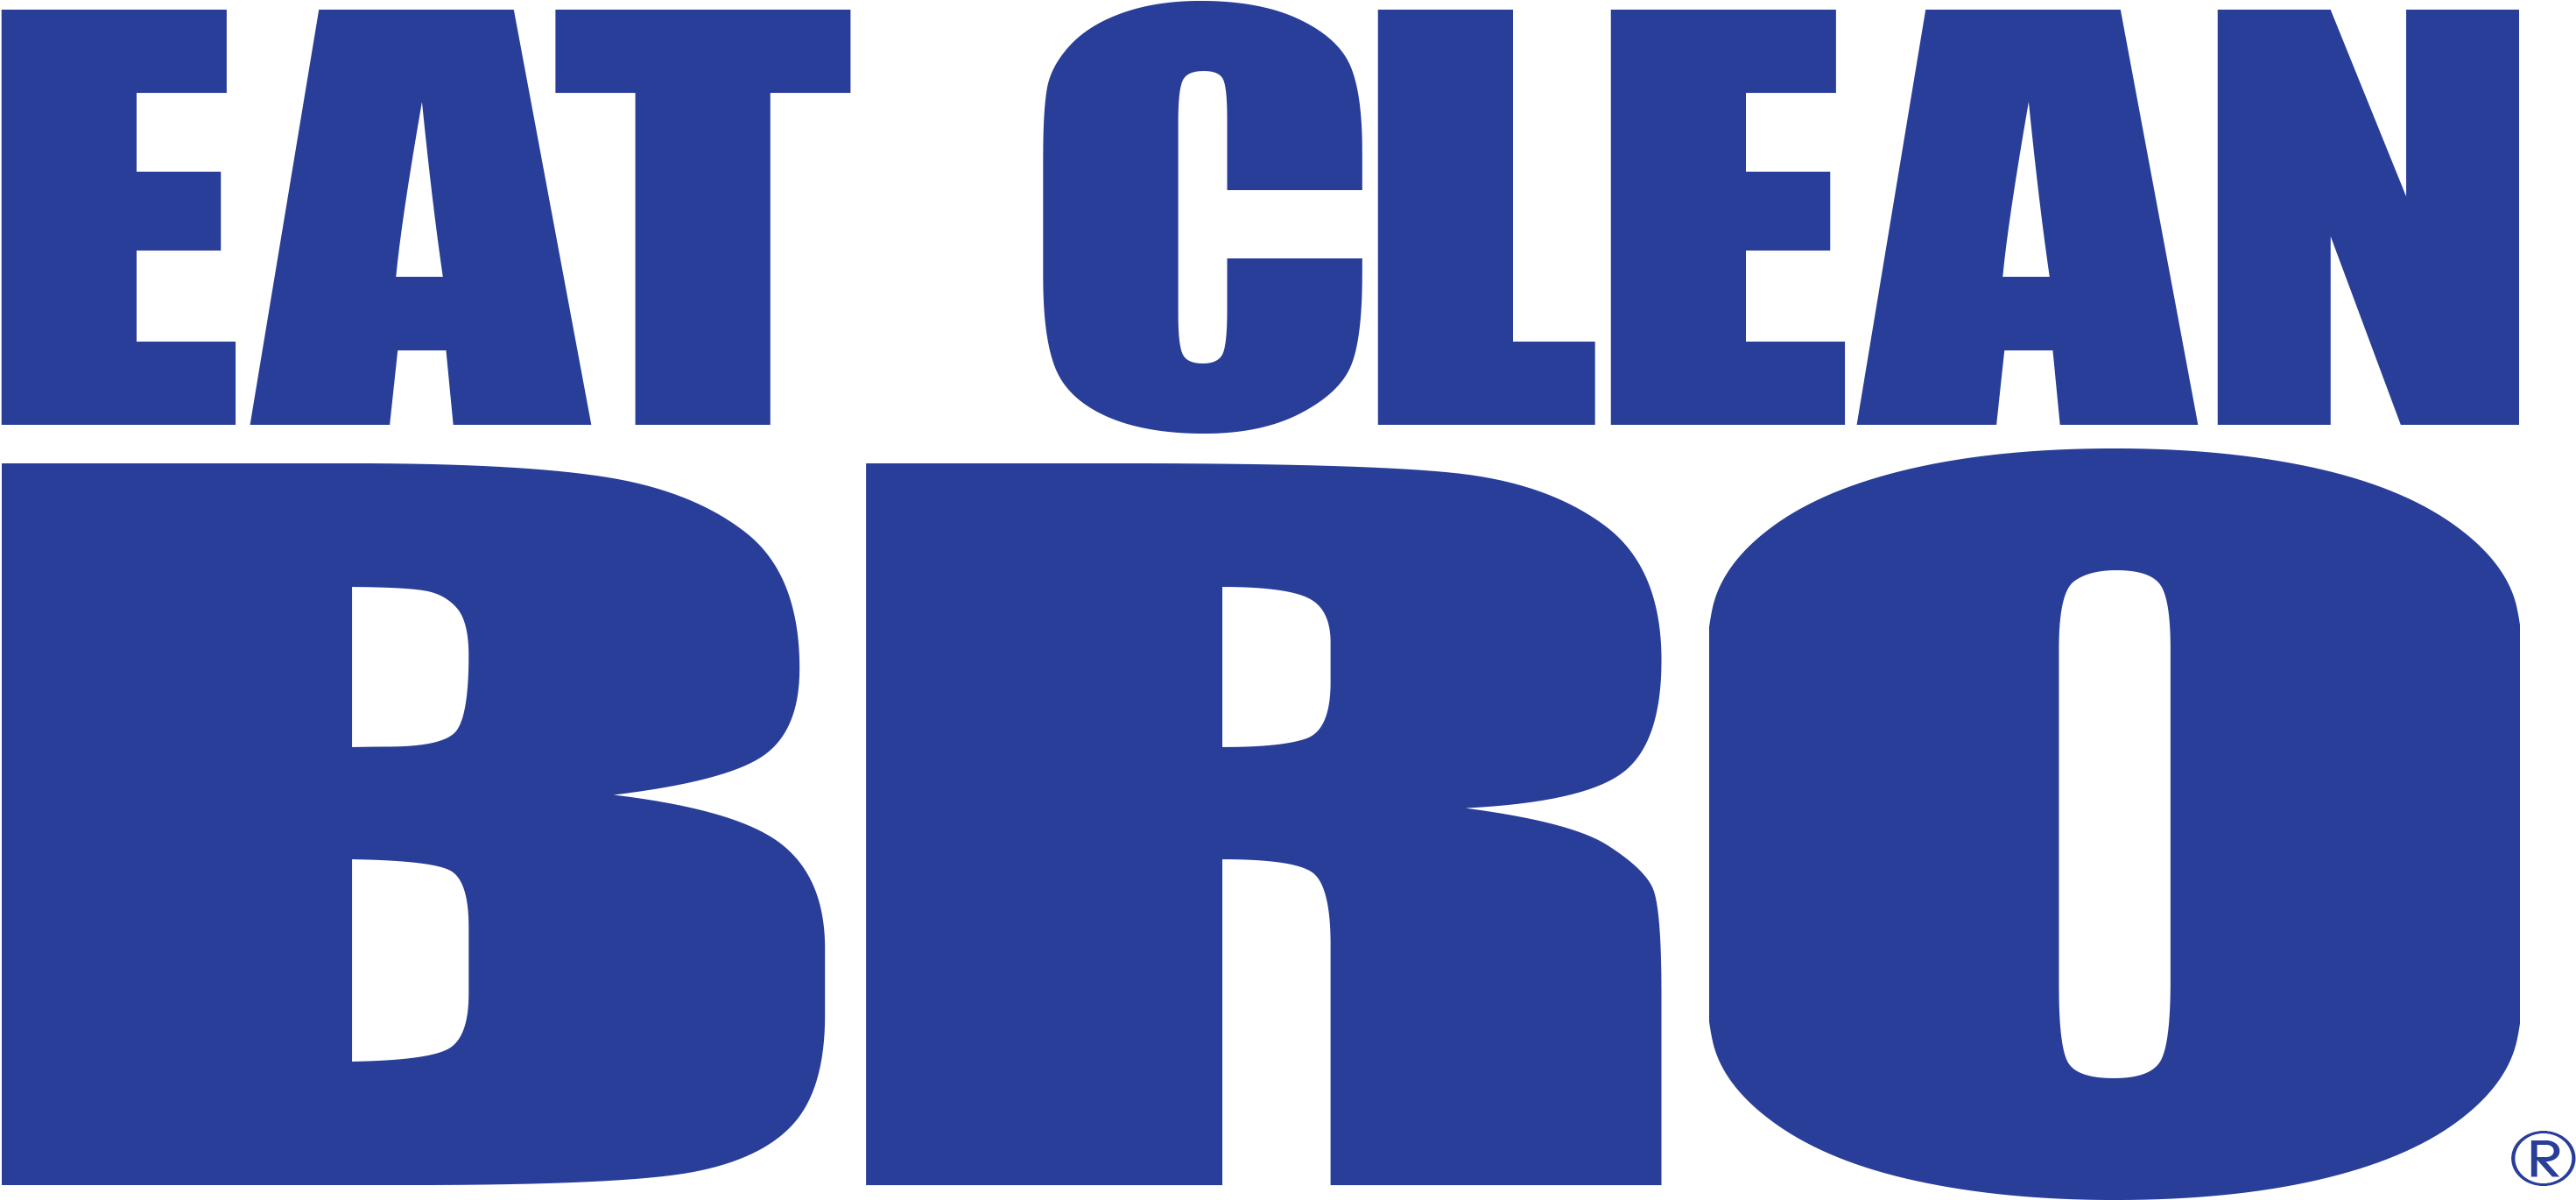 Eat Clean Bro - Eat Clean Bro (2968x1409)